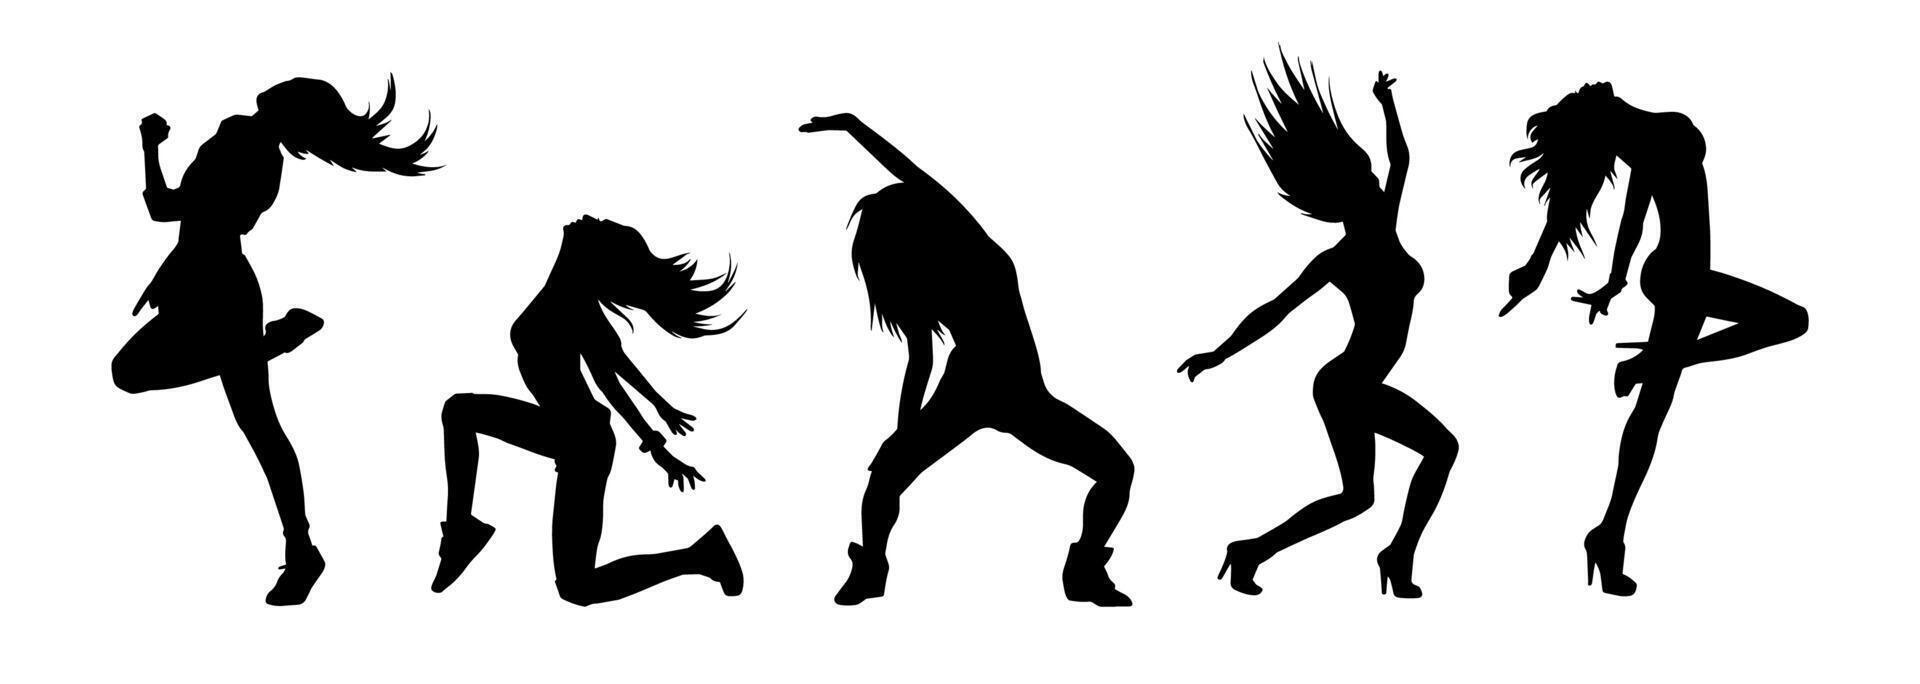 Silhouette Sammlung von weiblich Tänzer im Aktion Pose. Silhouette Gruppe von ein schlank Frau im Tanzen Pose. vektor